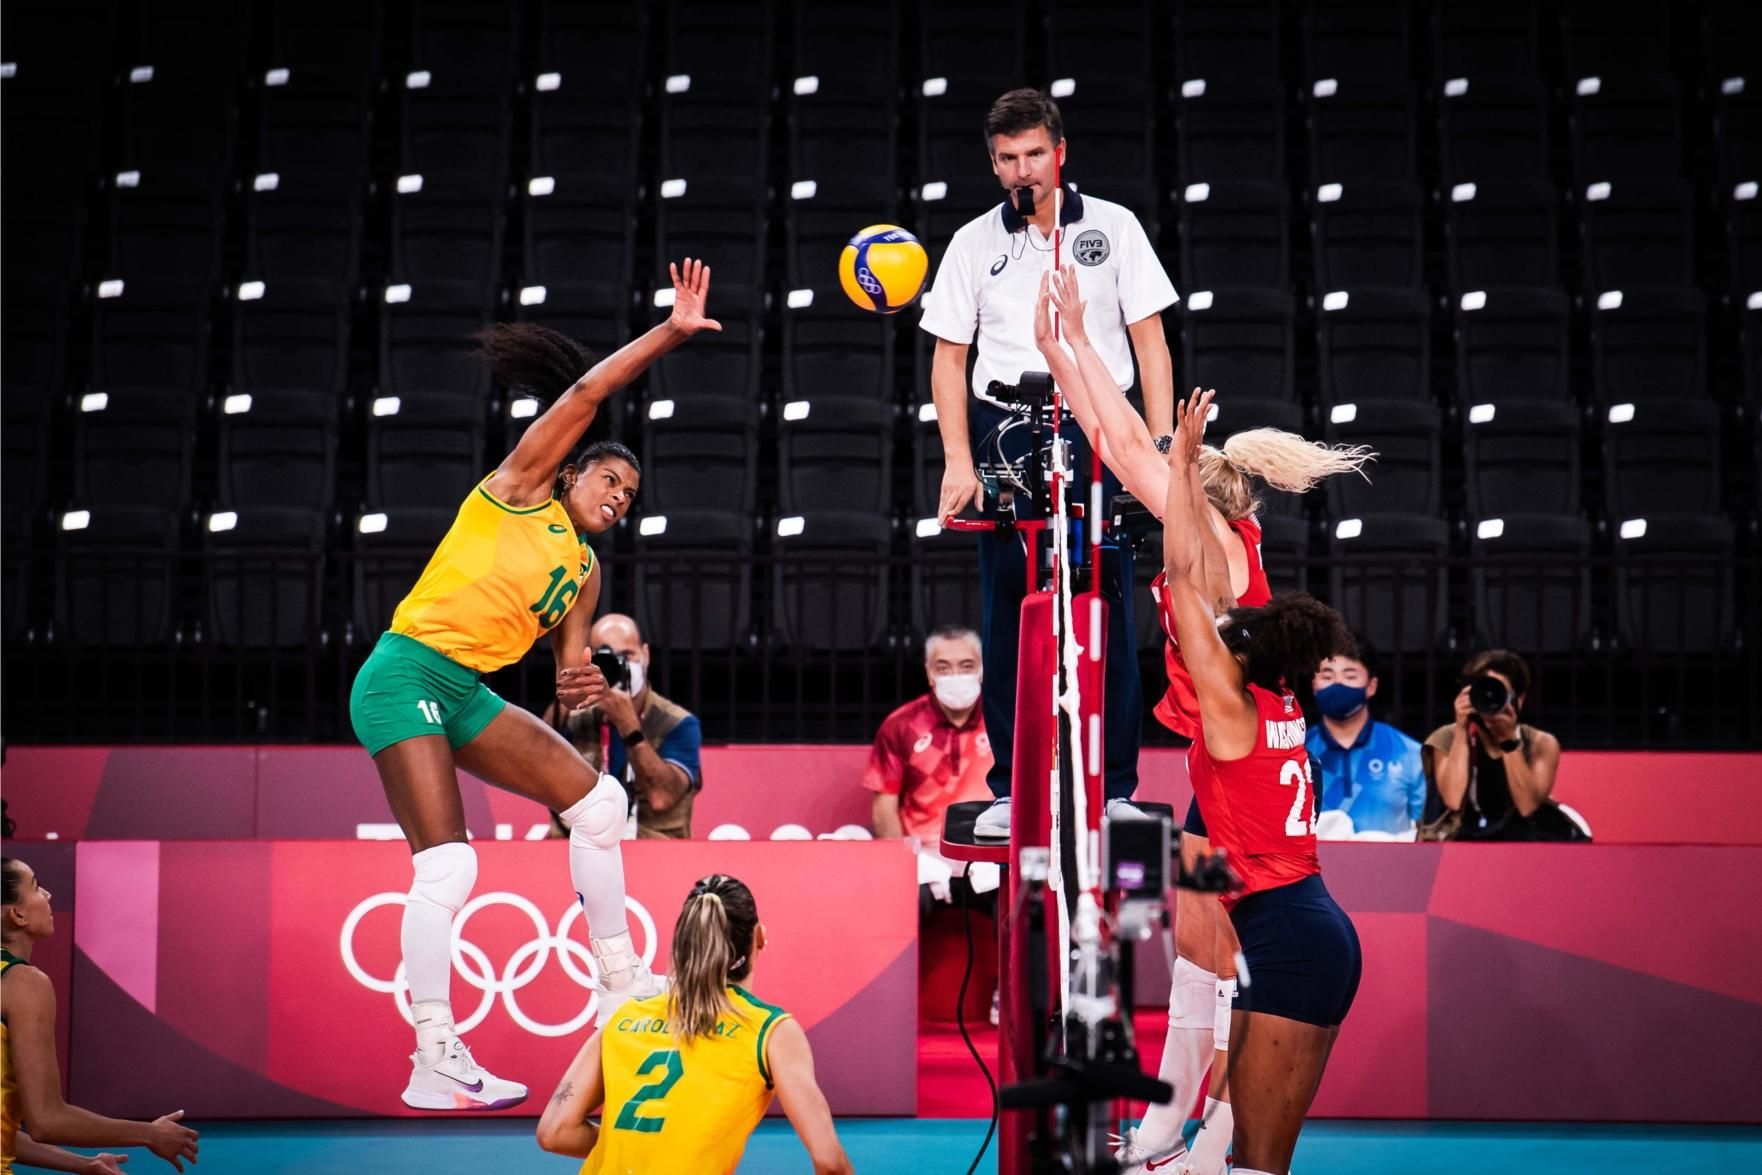 Renovado, Brasil volta à final do Mundial de vôlei feminino neste